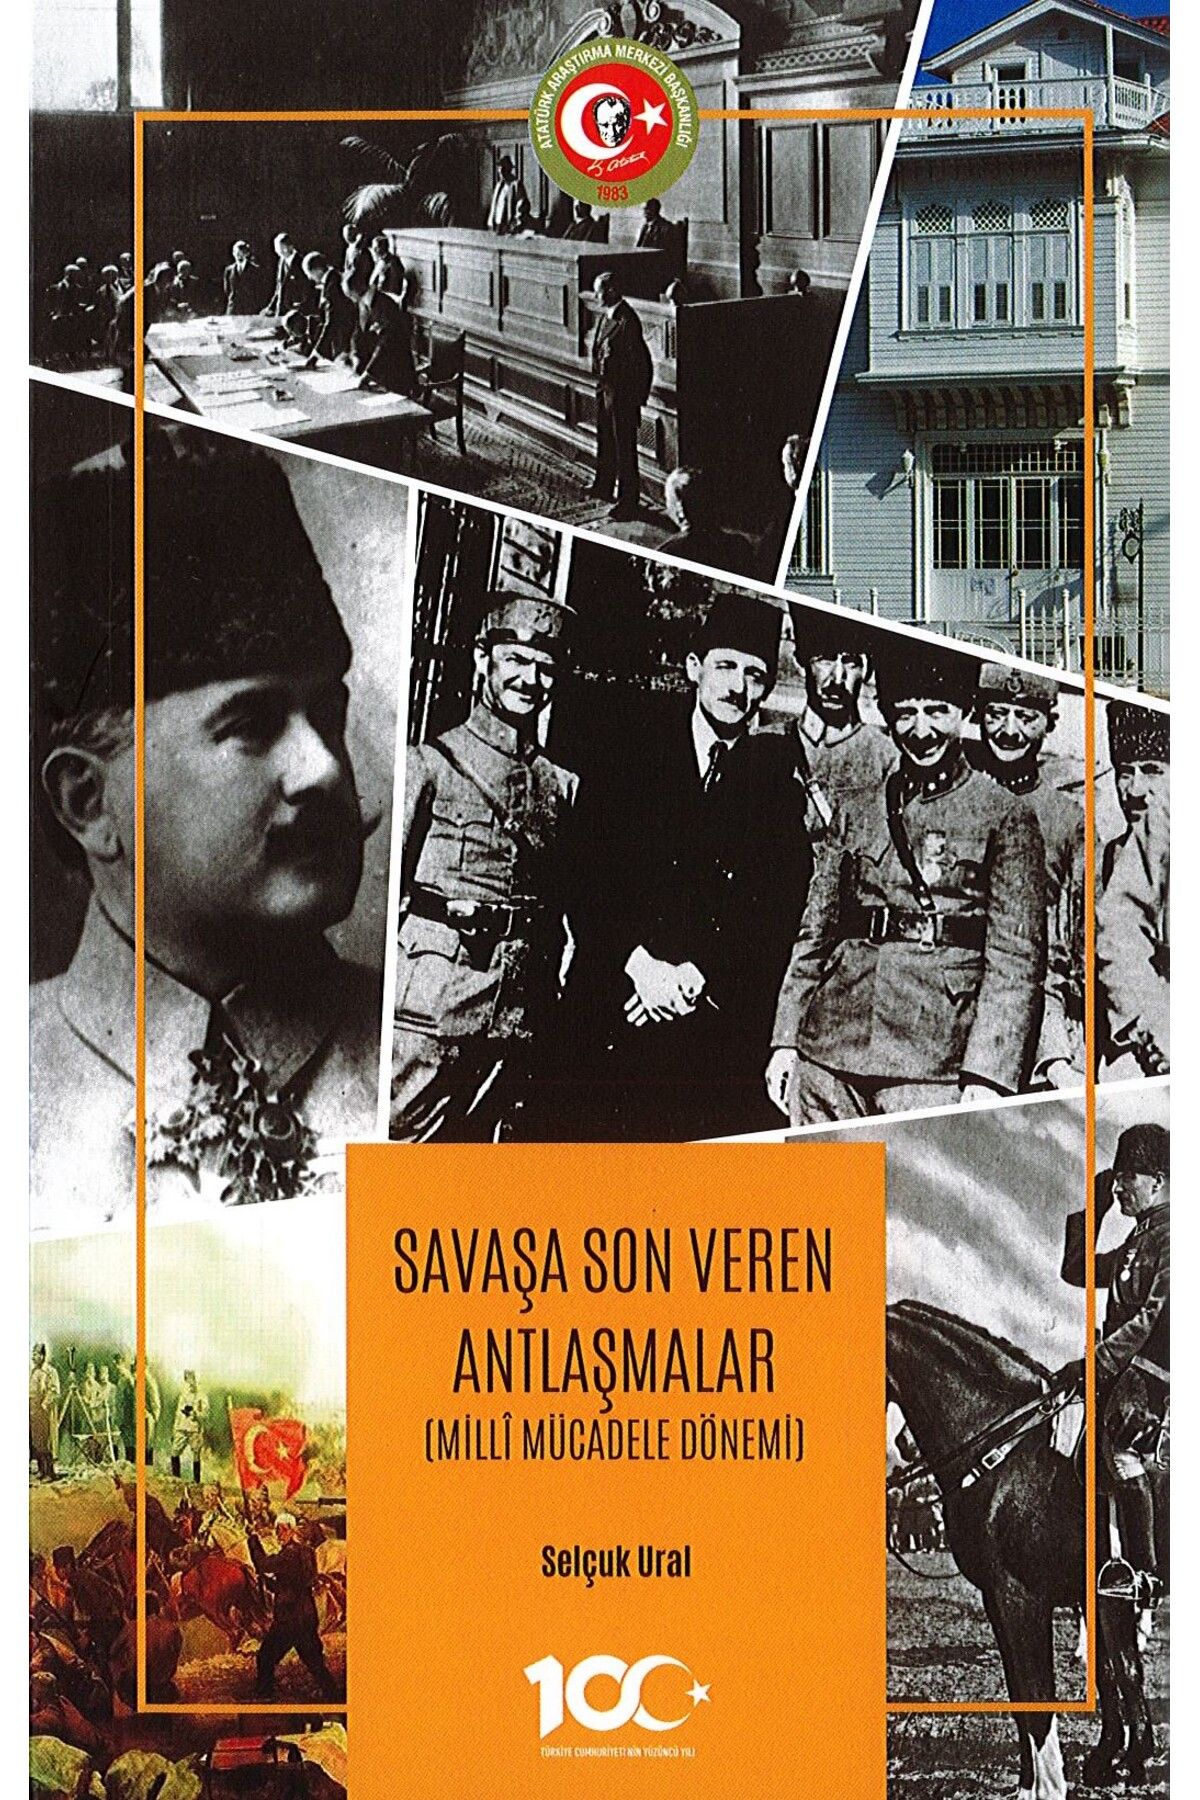 Atatürk Araştırma Merkezi Savaşa Son Veren Antlaşmalar (Millî Mücadele Dönemi)